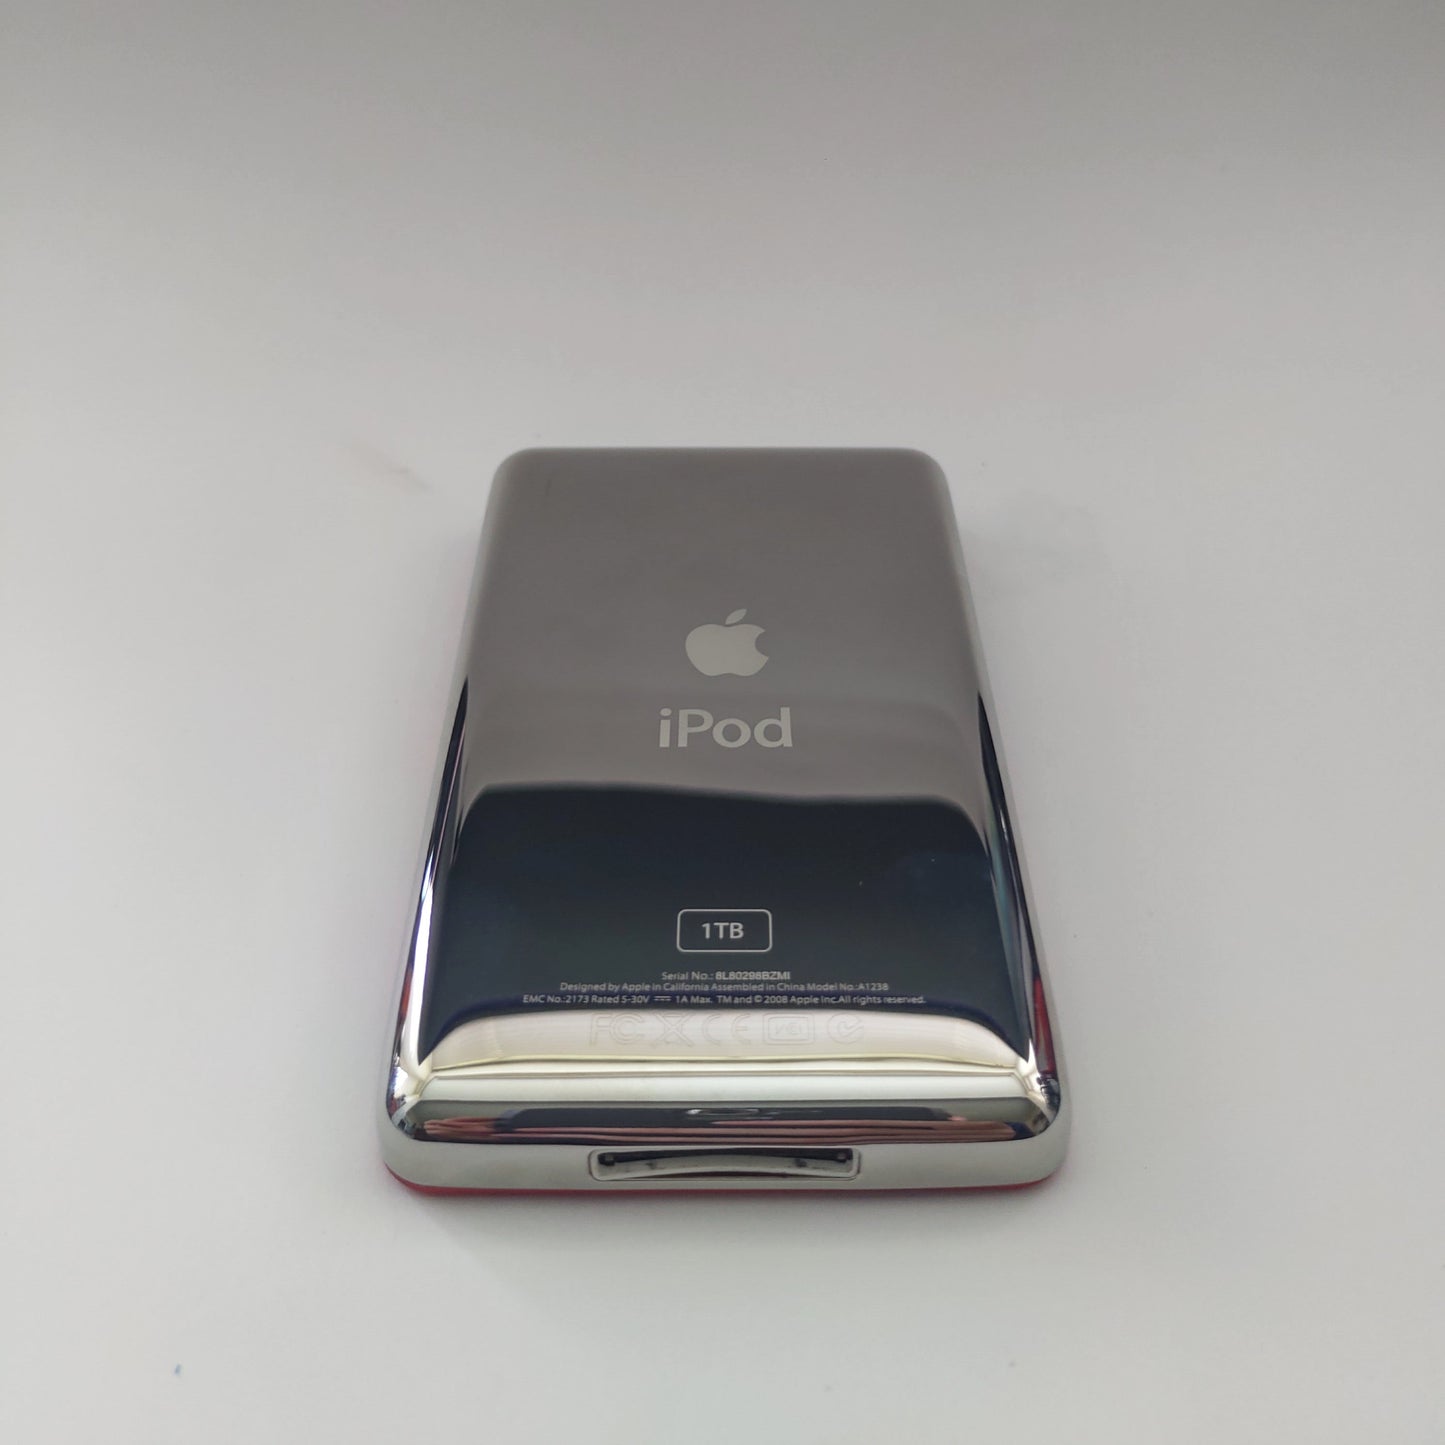 iPod classic 1TB Rear